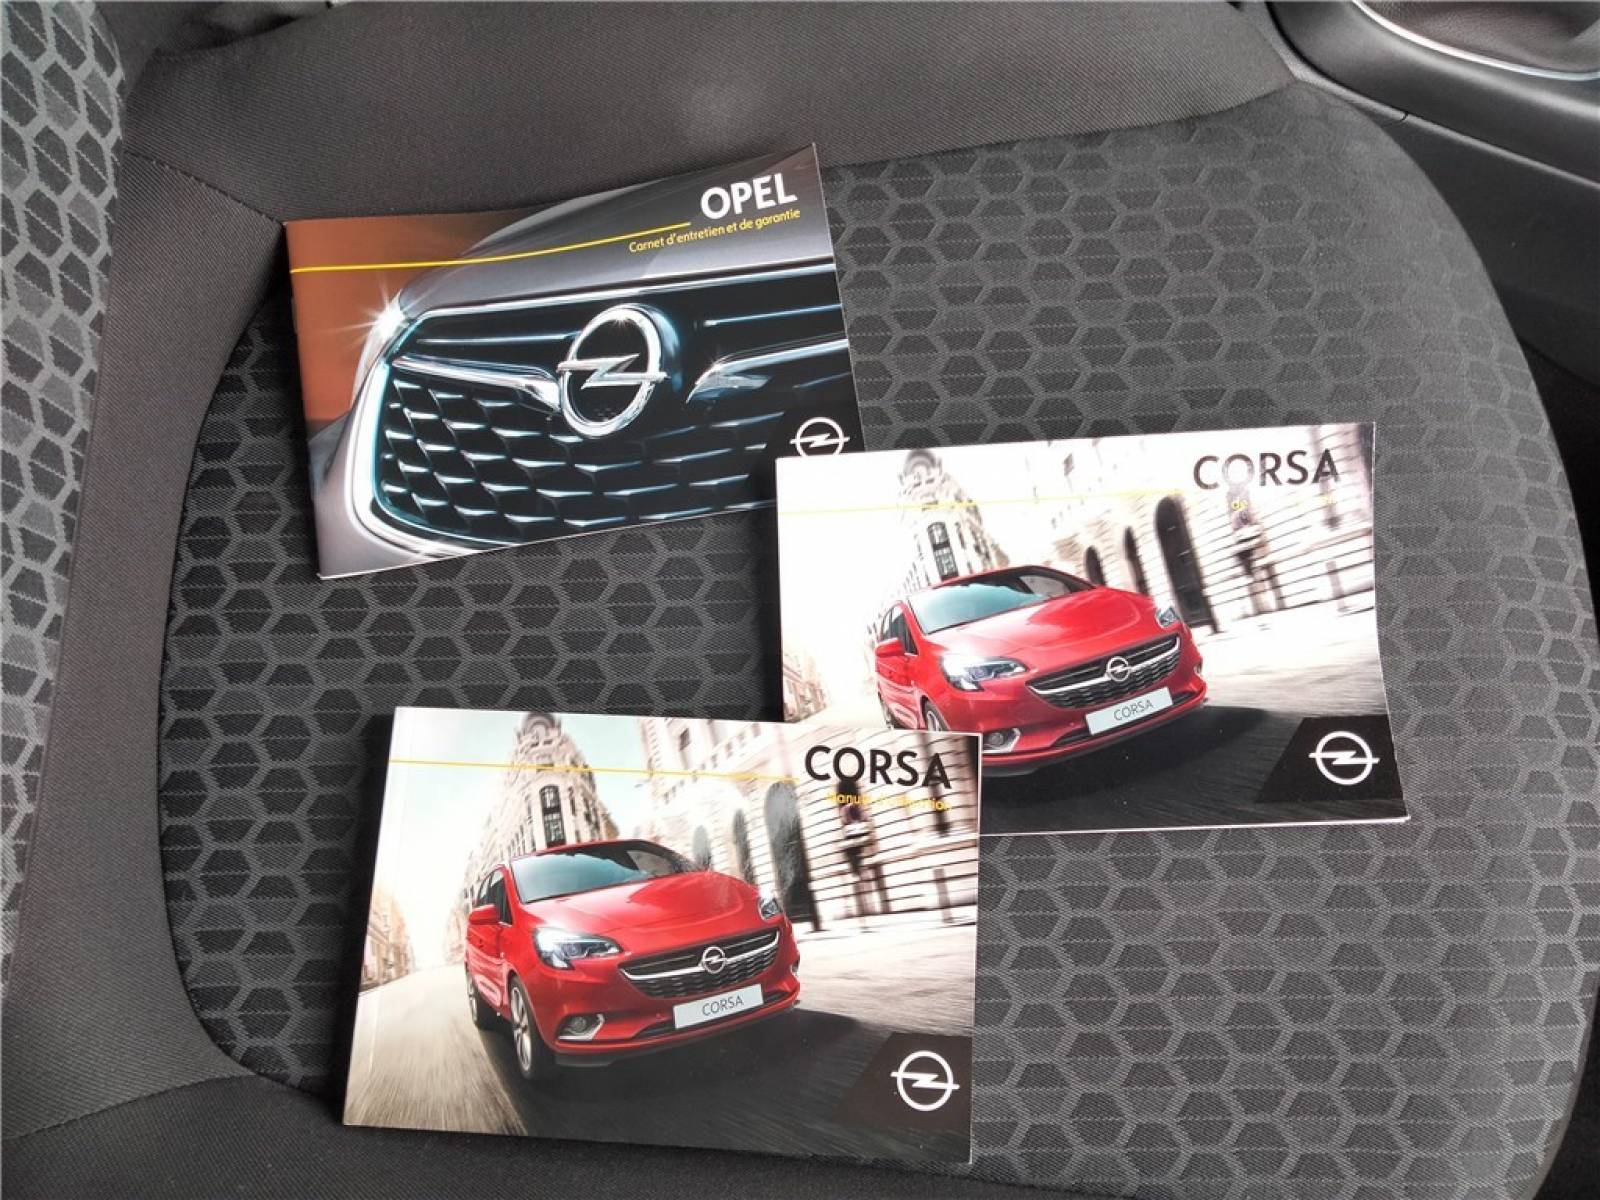 OPEL Corsa 1.4 90 ch - véhicule d'occasion - Groupe Guillet - Opel Magicauto - Chalon-sur-Saône - 71380 - Saint-Marcel - 20